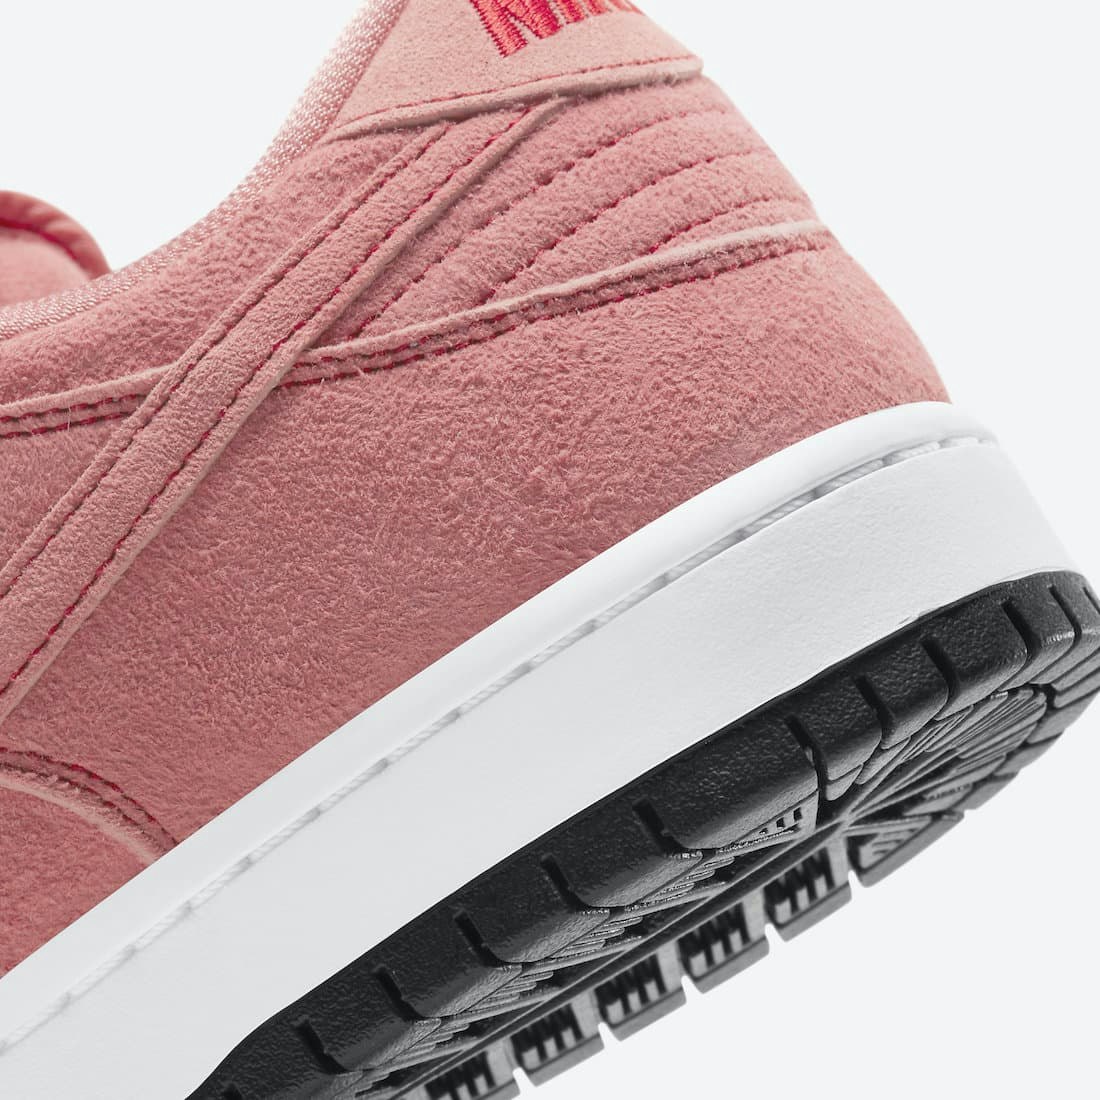 Nike SB Dunk Low "Pink Pig"